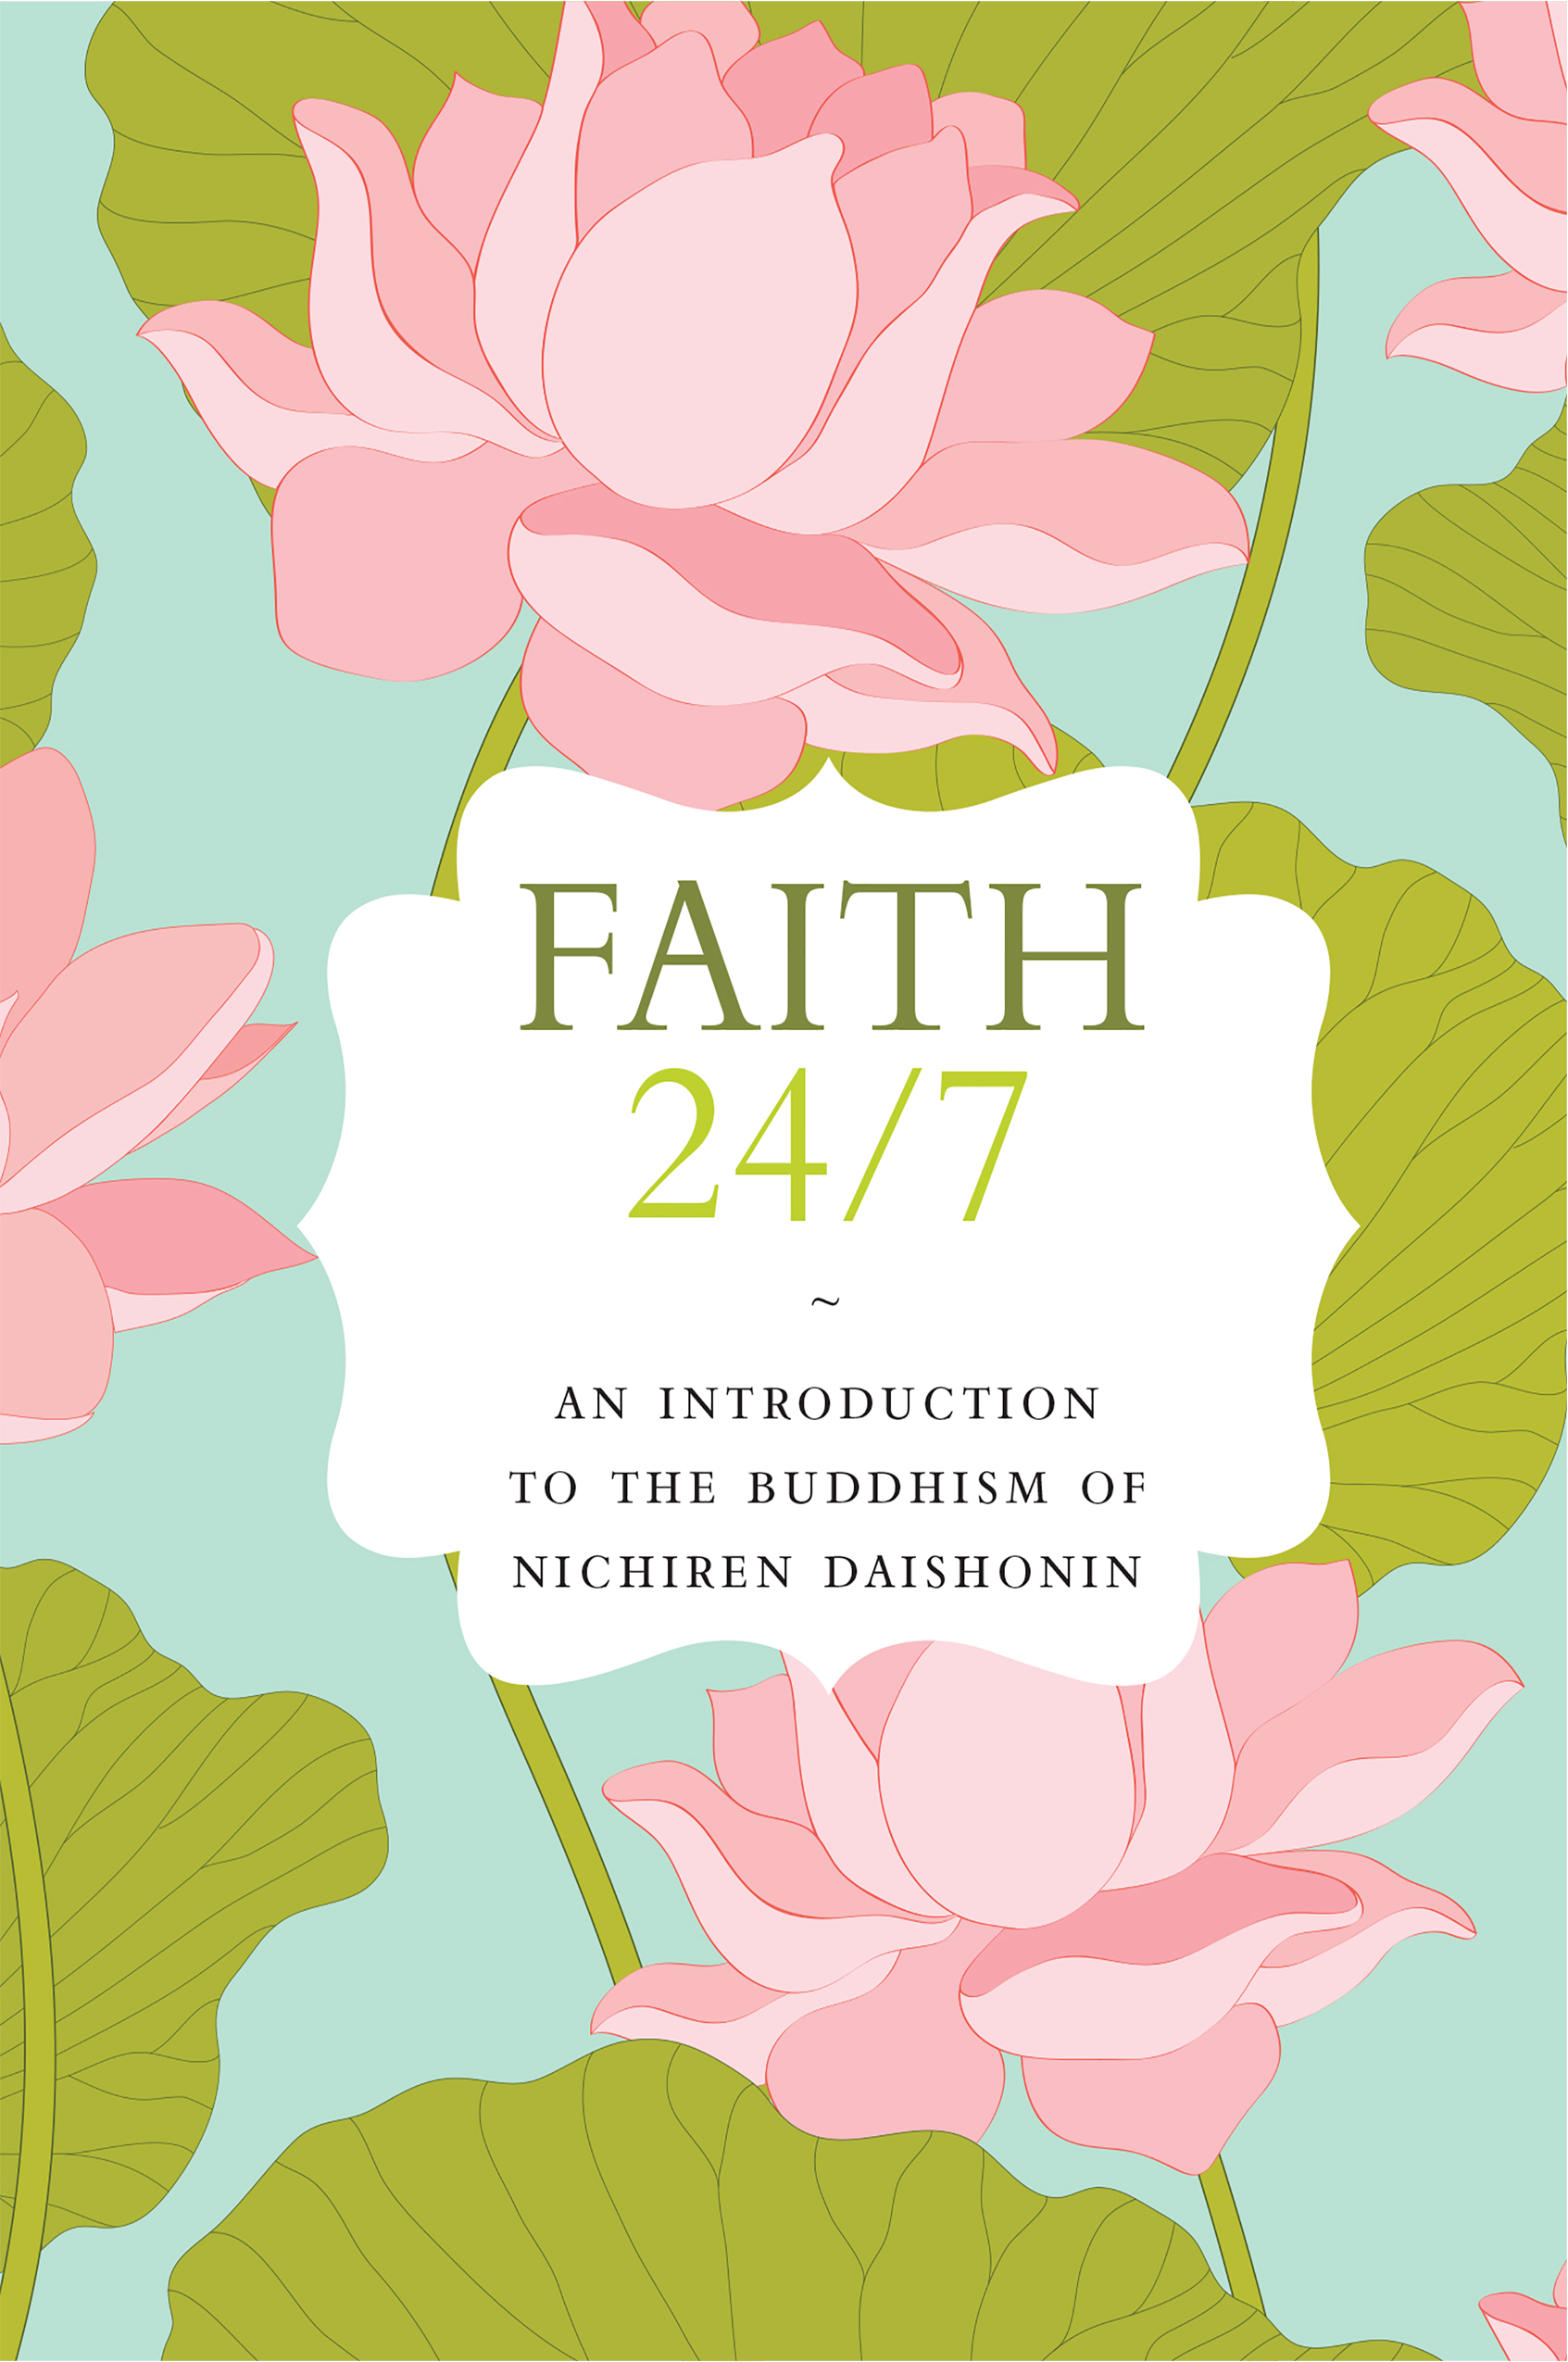 Faith24/7